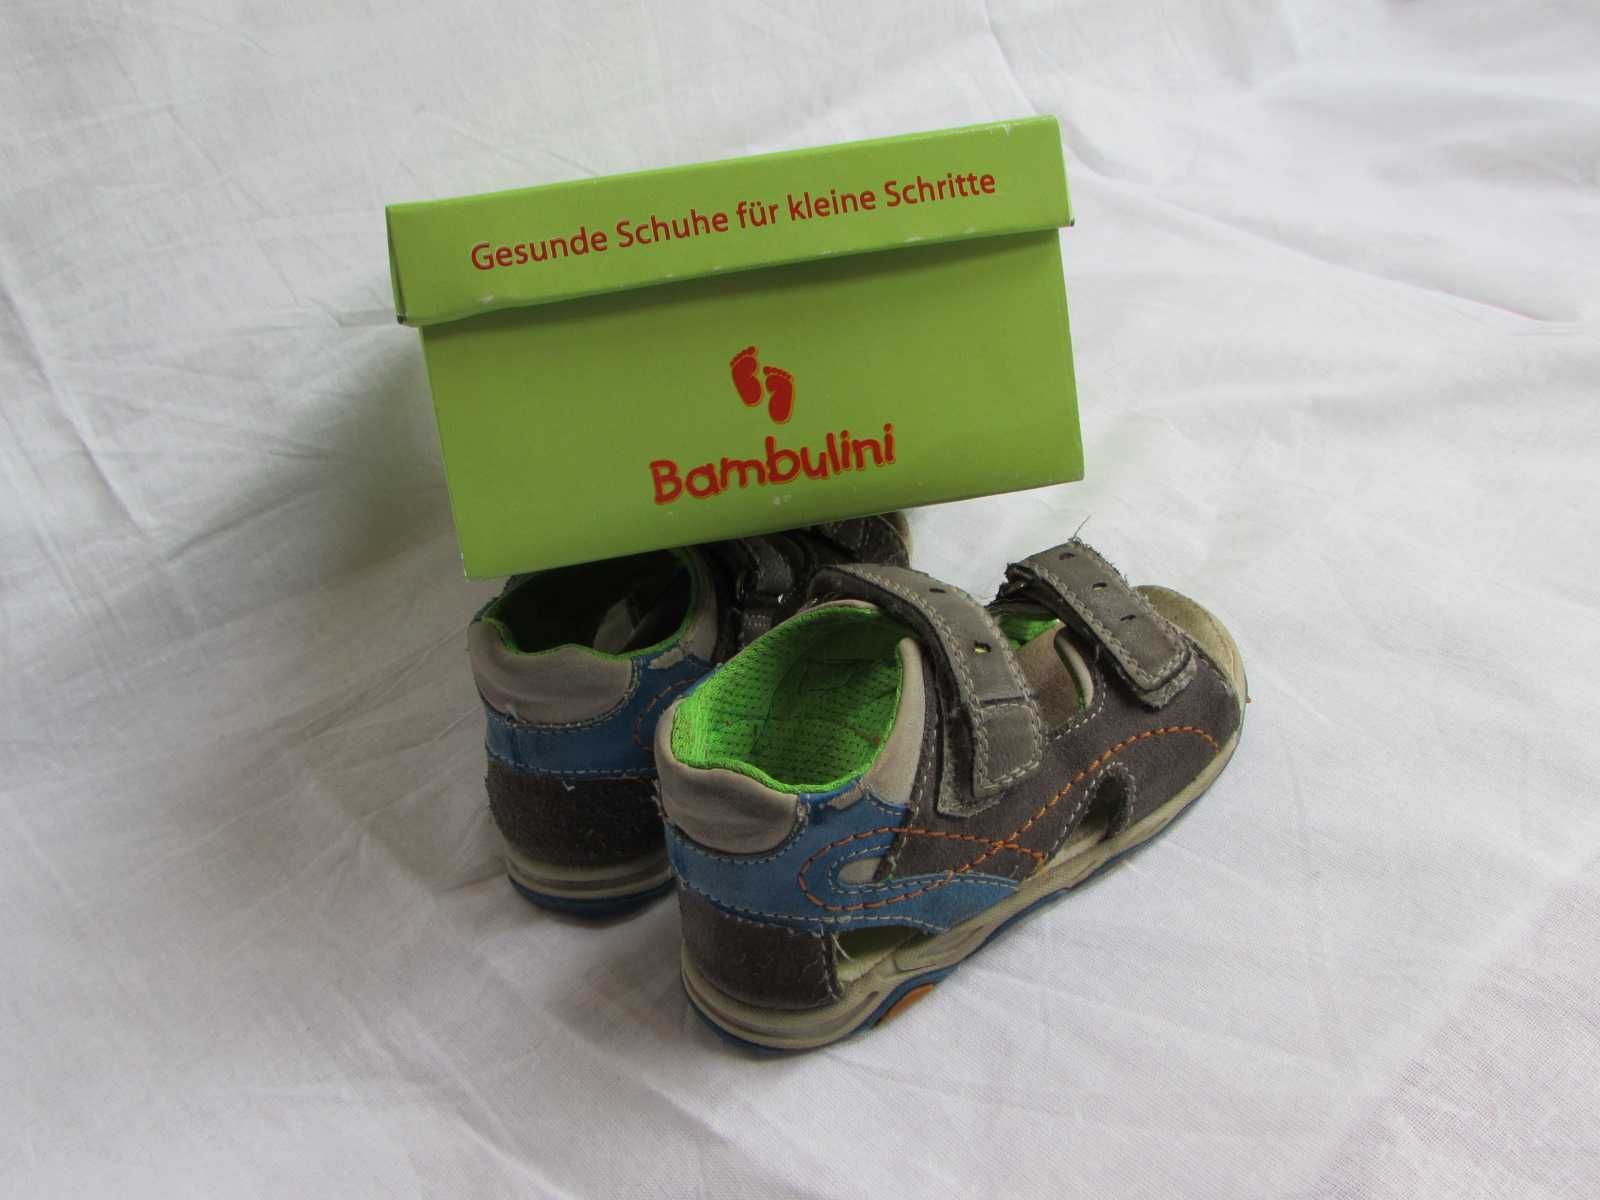 Buty sandałki chłopięce Bambulini, skórzane, używane, rozmiar 24